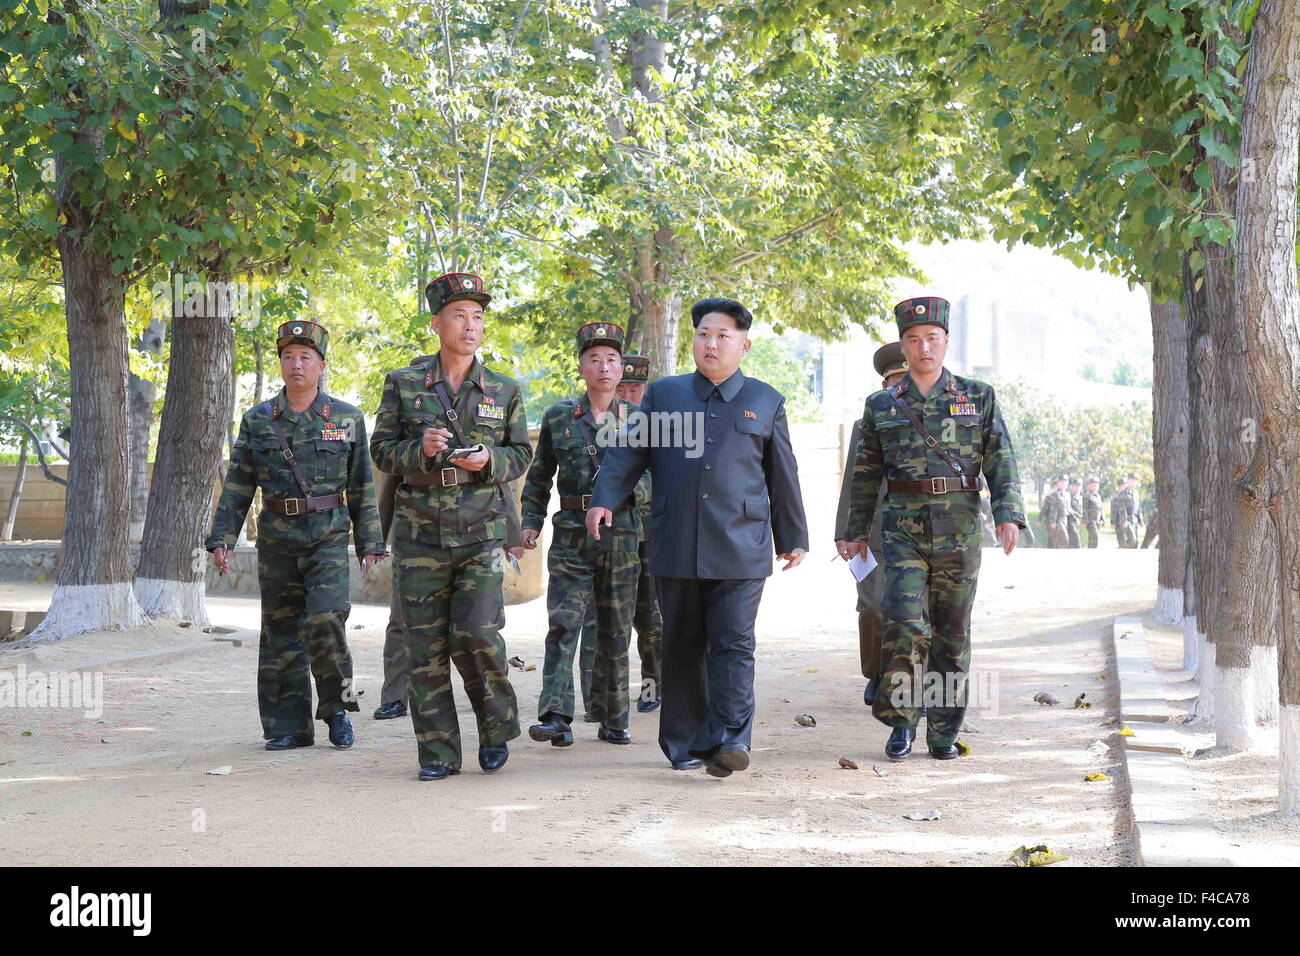 Pyongyang. 16 Oct, 2015. Fotografía proporcionada por la Agencia Central de Noticias de Corea (KCNA) El 16 de octubre de 2015 muestra el máximo dirigente de la República Popular Democrática de Corea (RPDC), Kim Jong-Nu frontal (R) de la unidad de inspección recientemente 350 del Ejército Popular de Corea (KPA). Crédito: KCNA/Xinhua/Alamy Live News Foto de stock